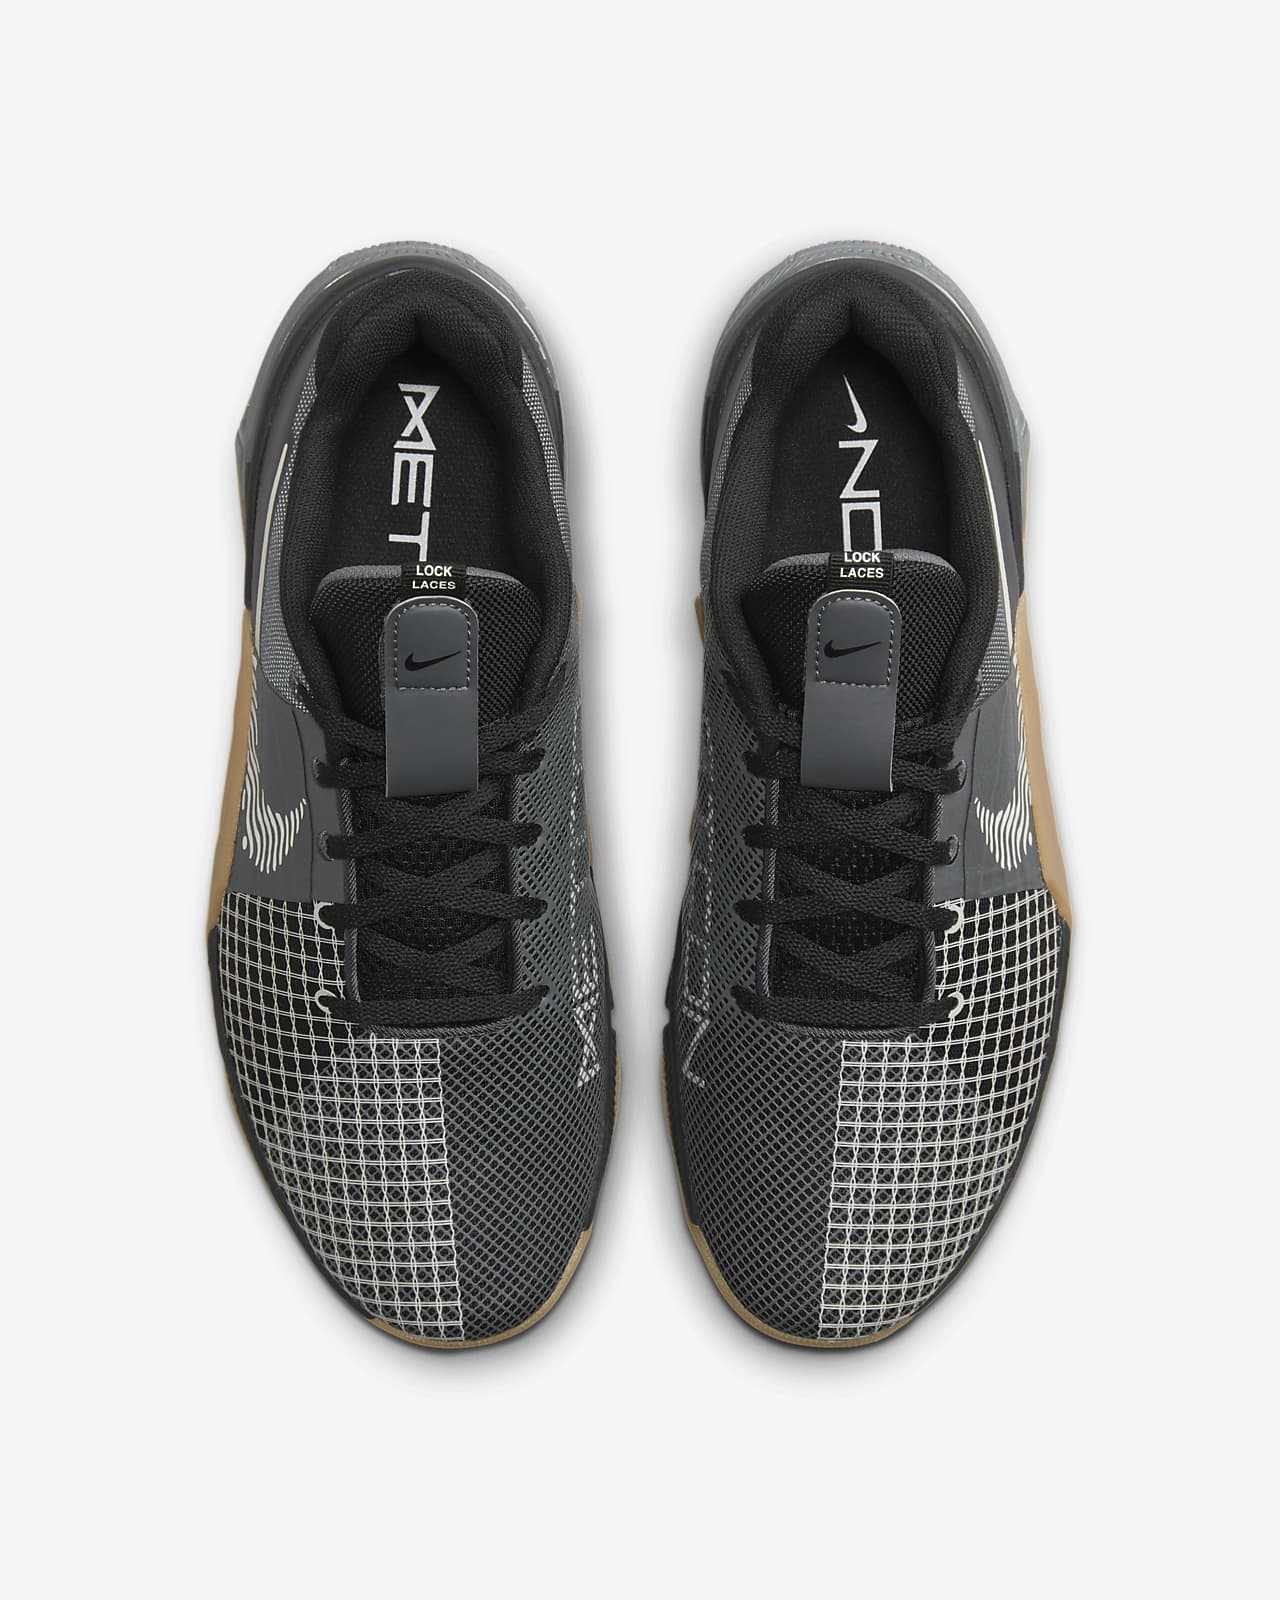 Sneakers for Men Black / 10